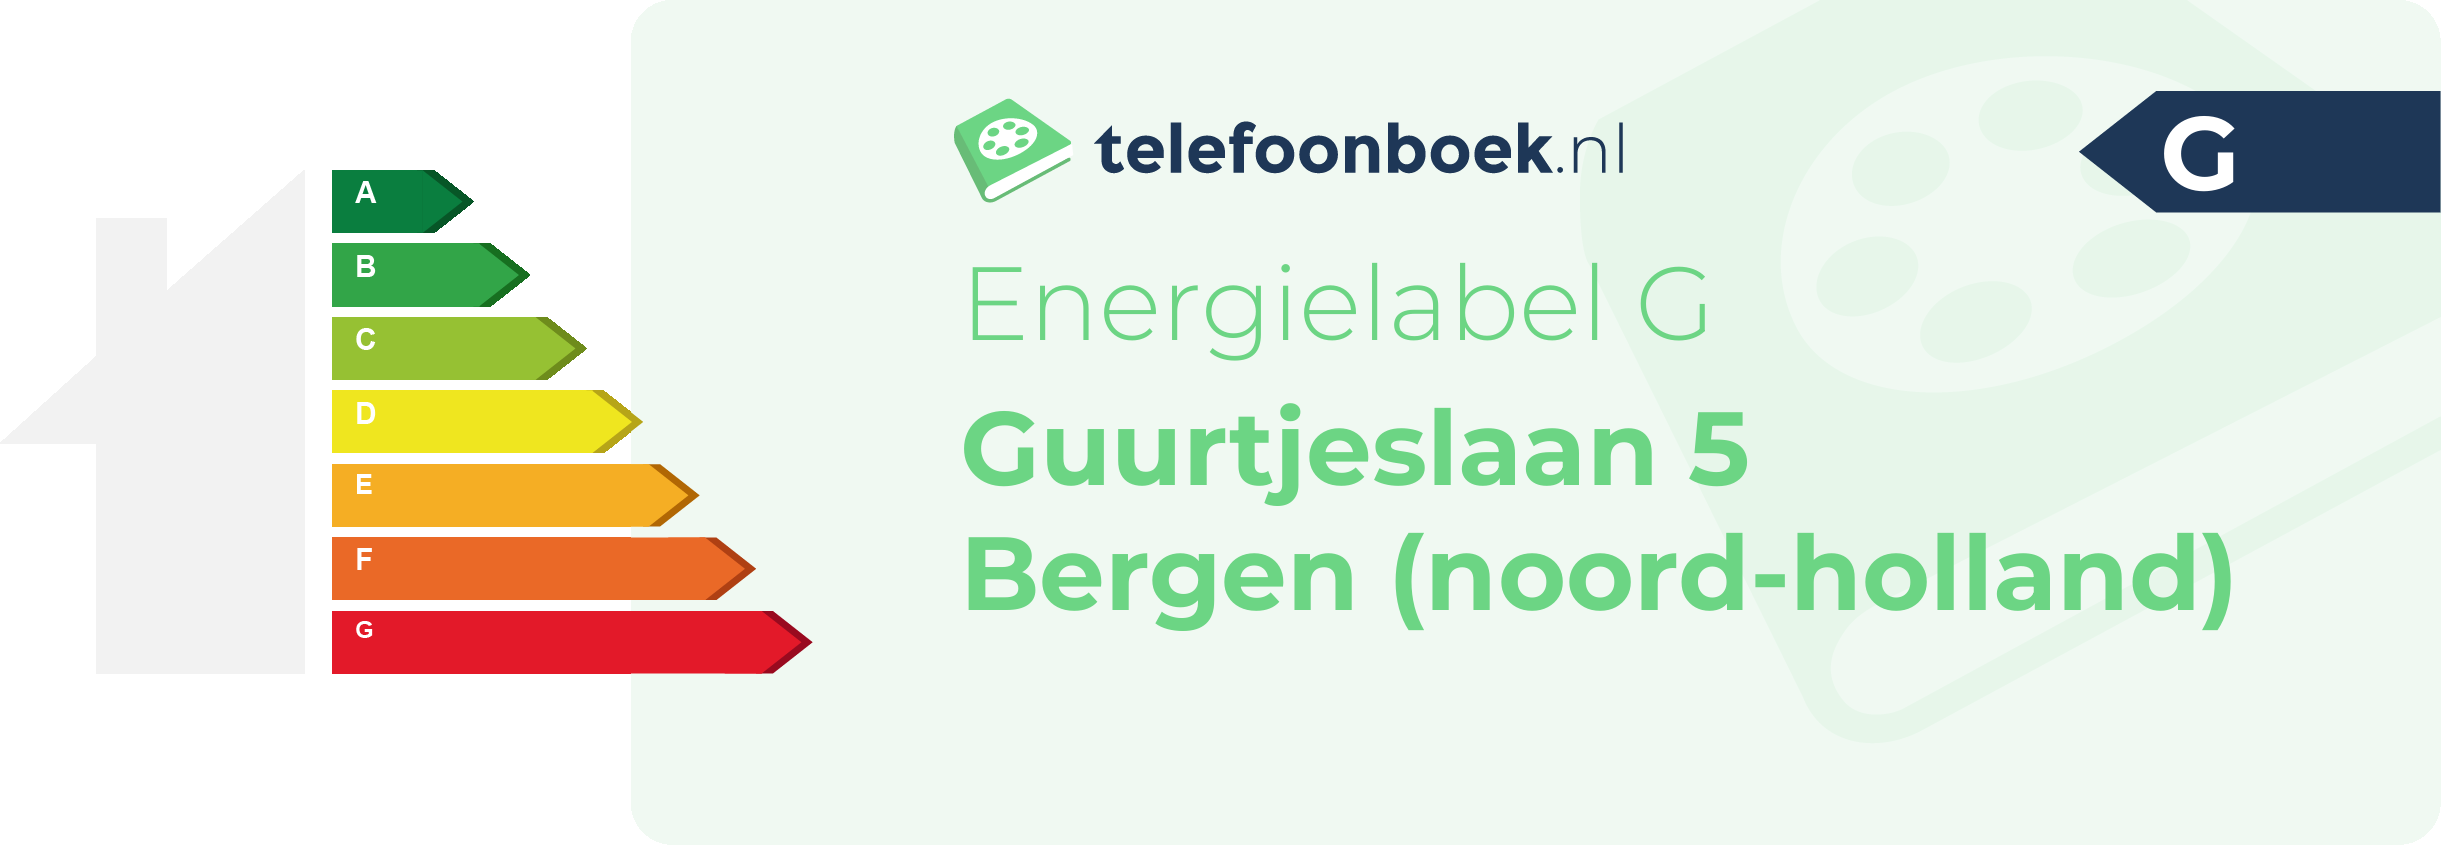 Energielabel Guurtjeslaan 5 Bergen (Noord-Holland)